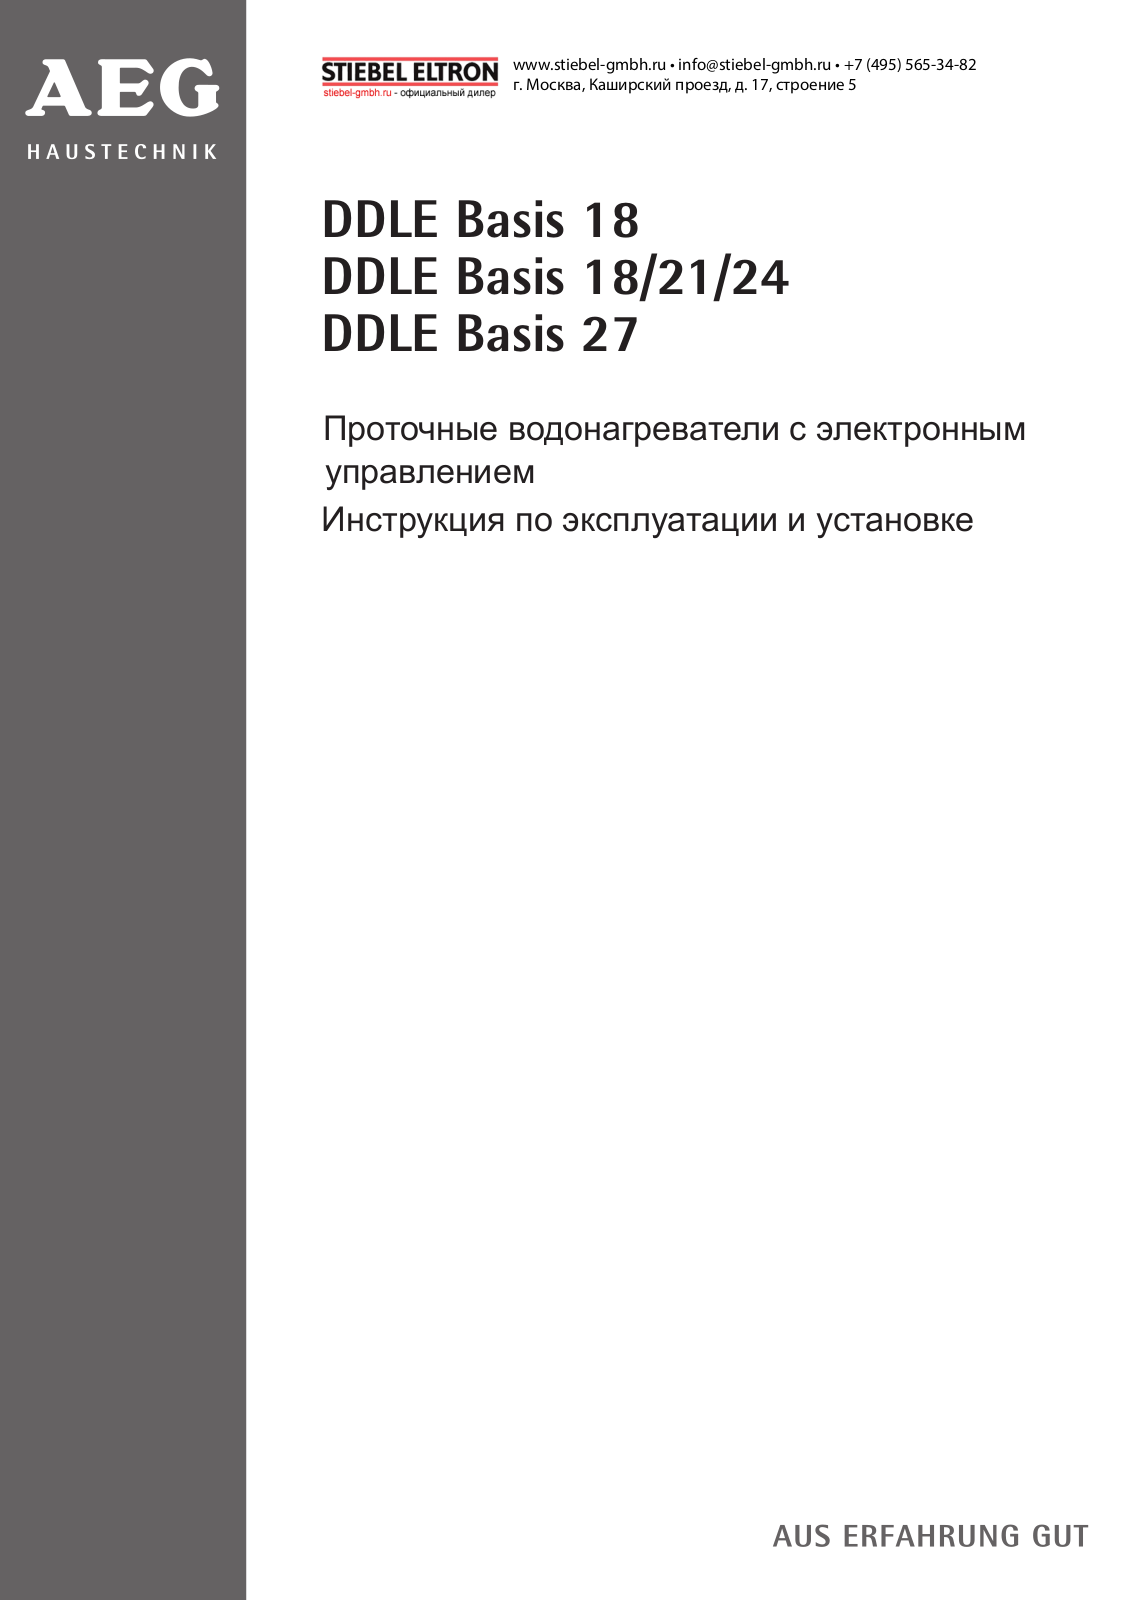 Aeg DDLE Basis 18, DDLE Basis 21, DDLE Basis 24 User Manual